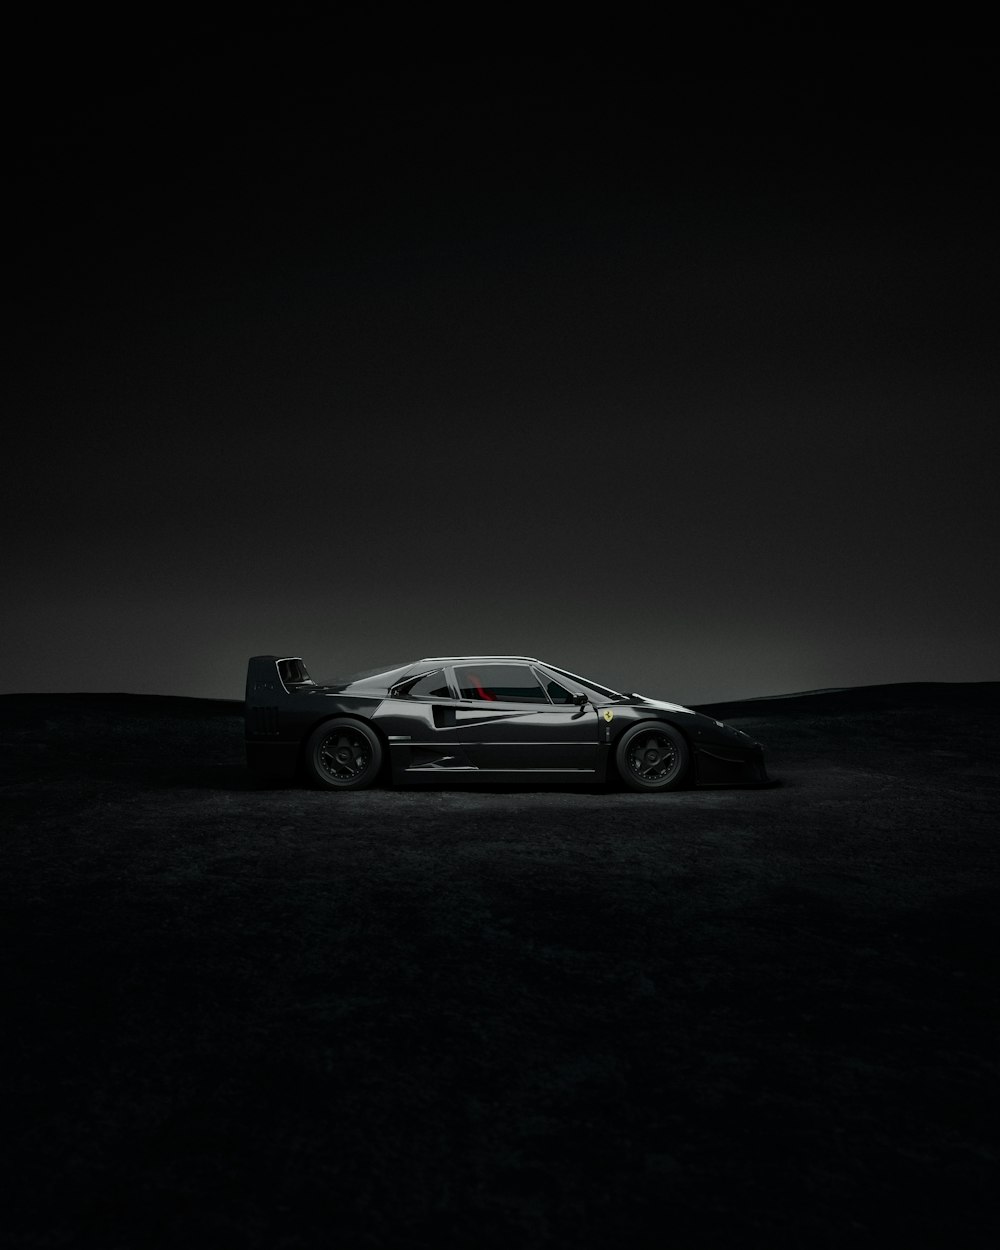 a car parked in the dark on a dark background